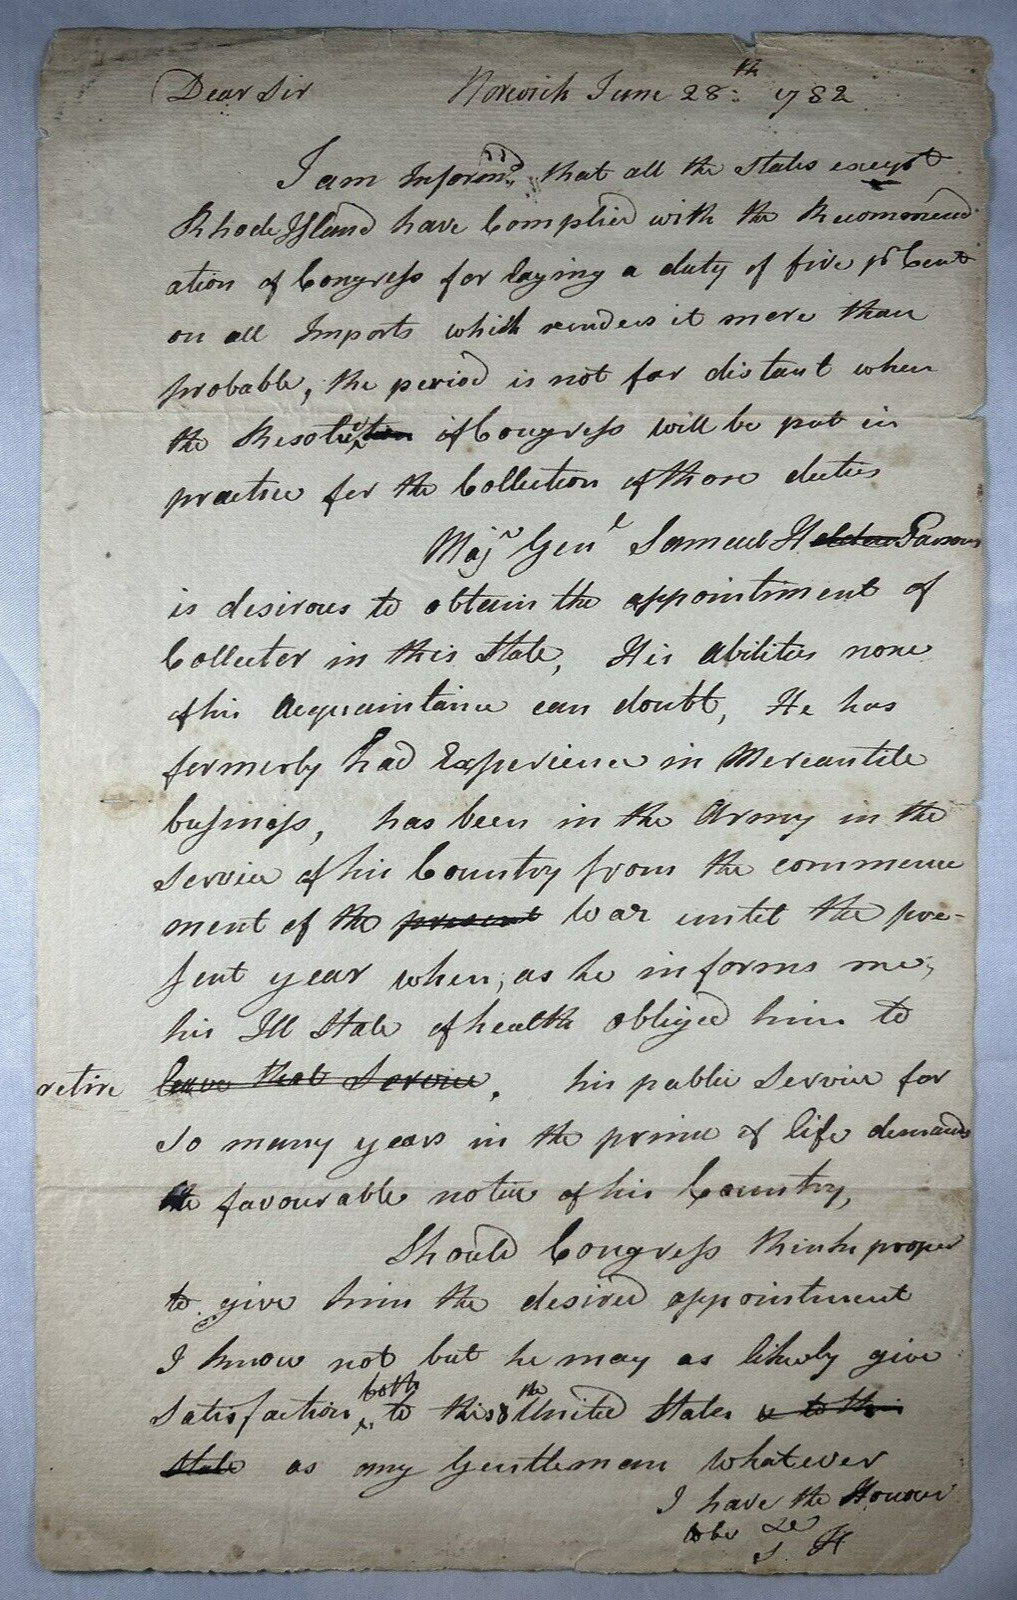 Samuel Huntington - Autograph Letter Signed - Praises General Parsons' Service